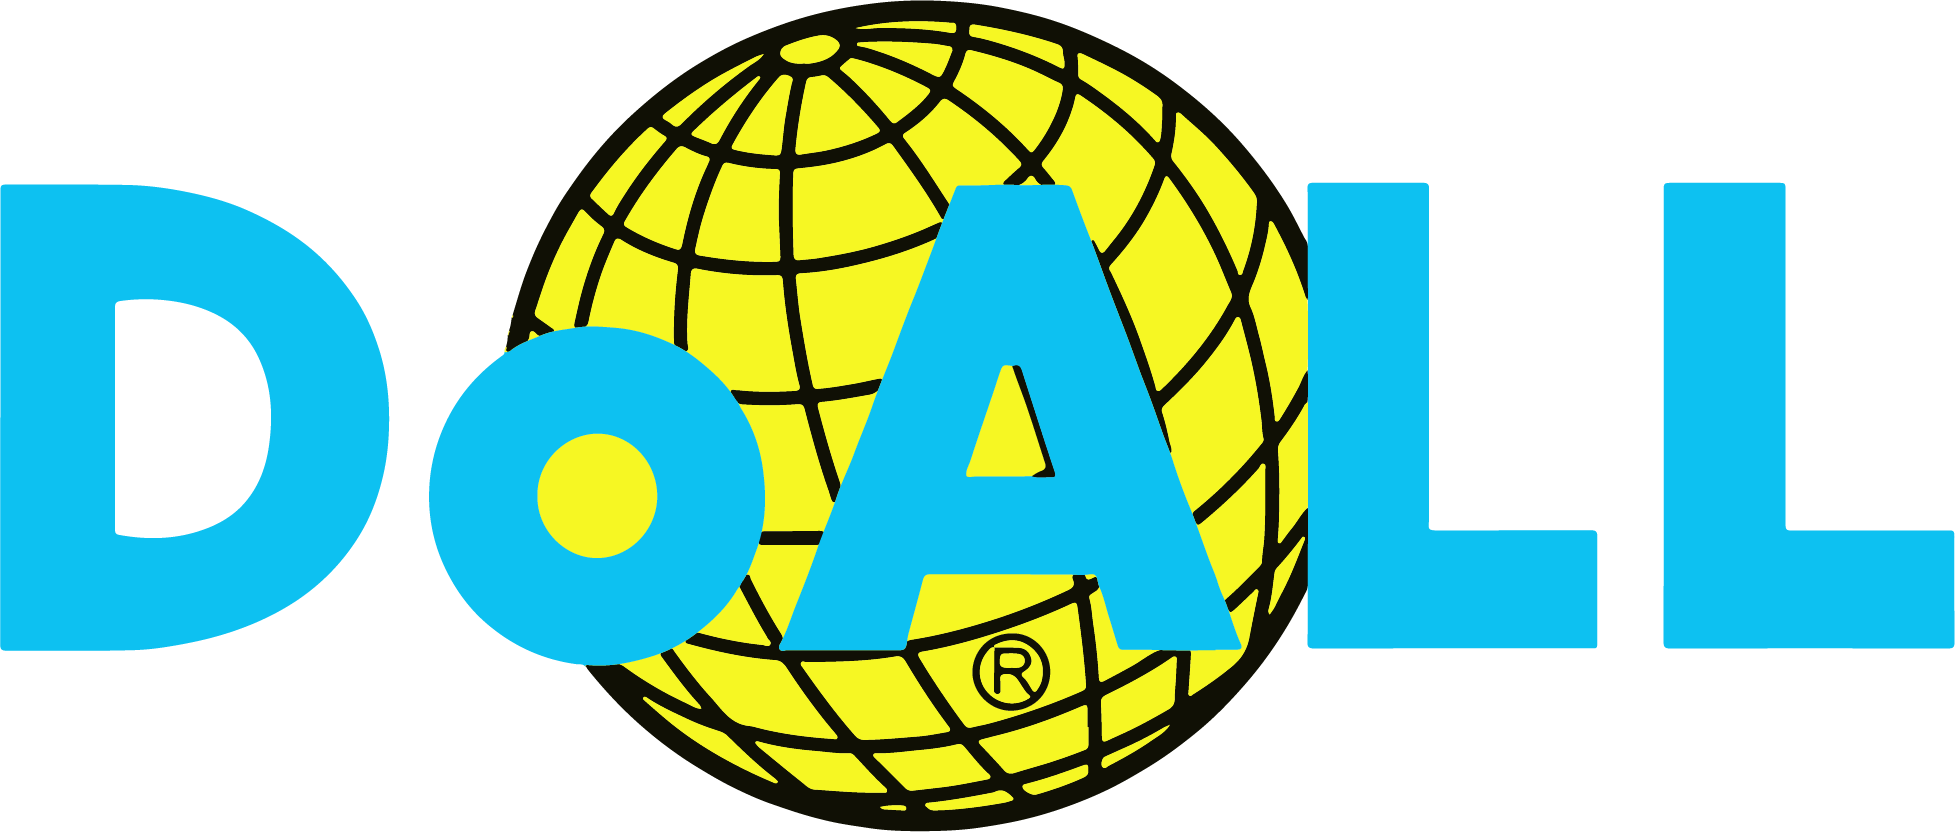 DoAll-logo